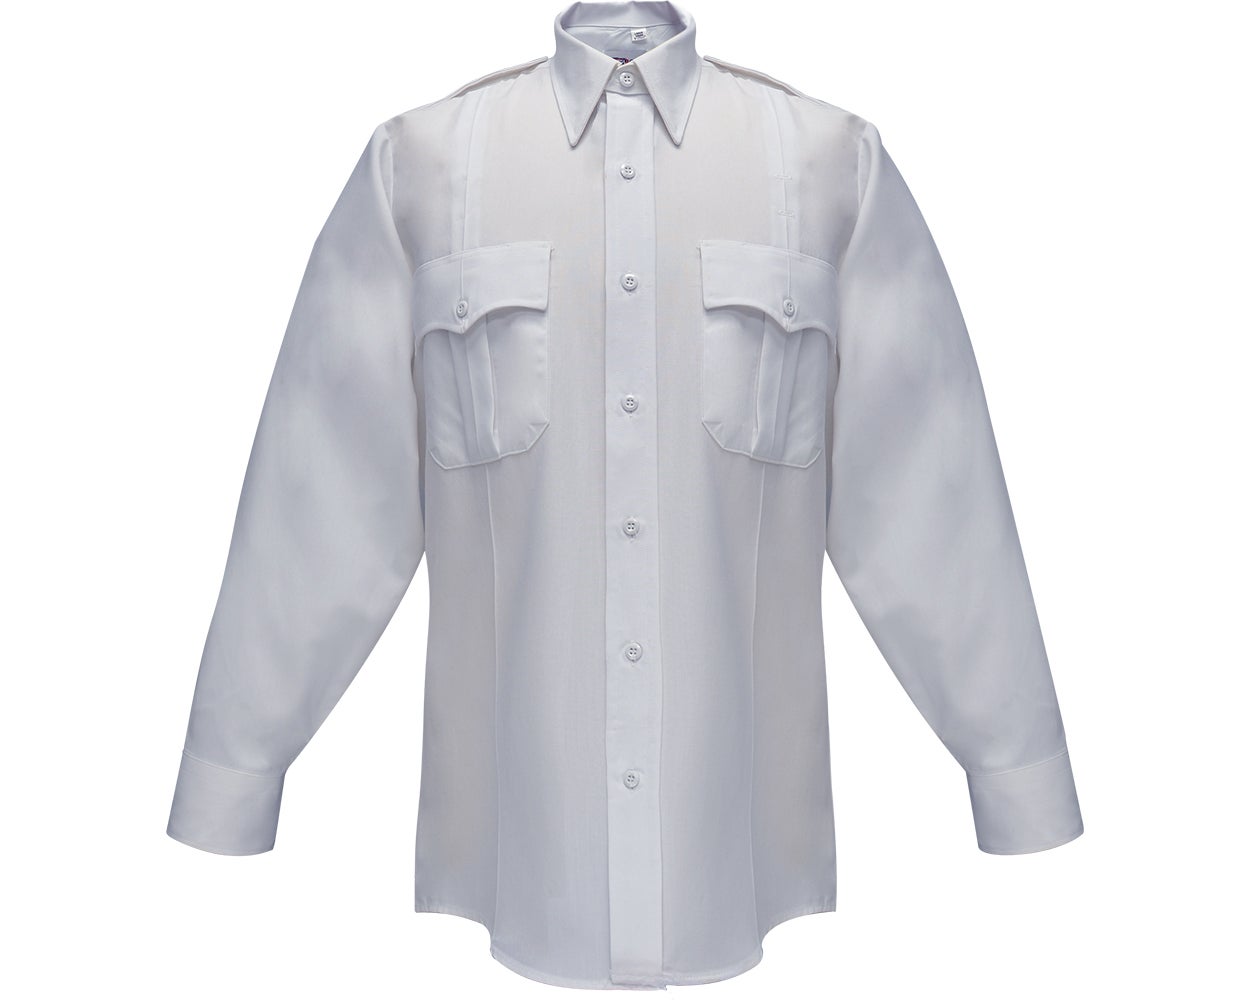 Flying Cross Command 100% Polyester Men's Long Sleeve Shirt